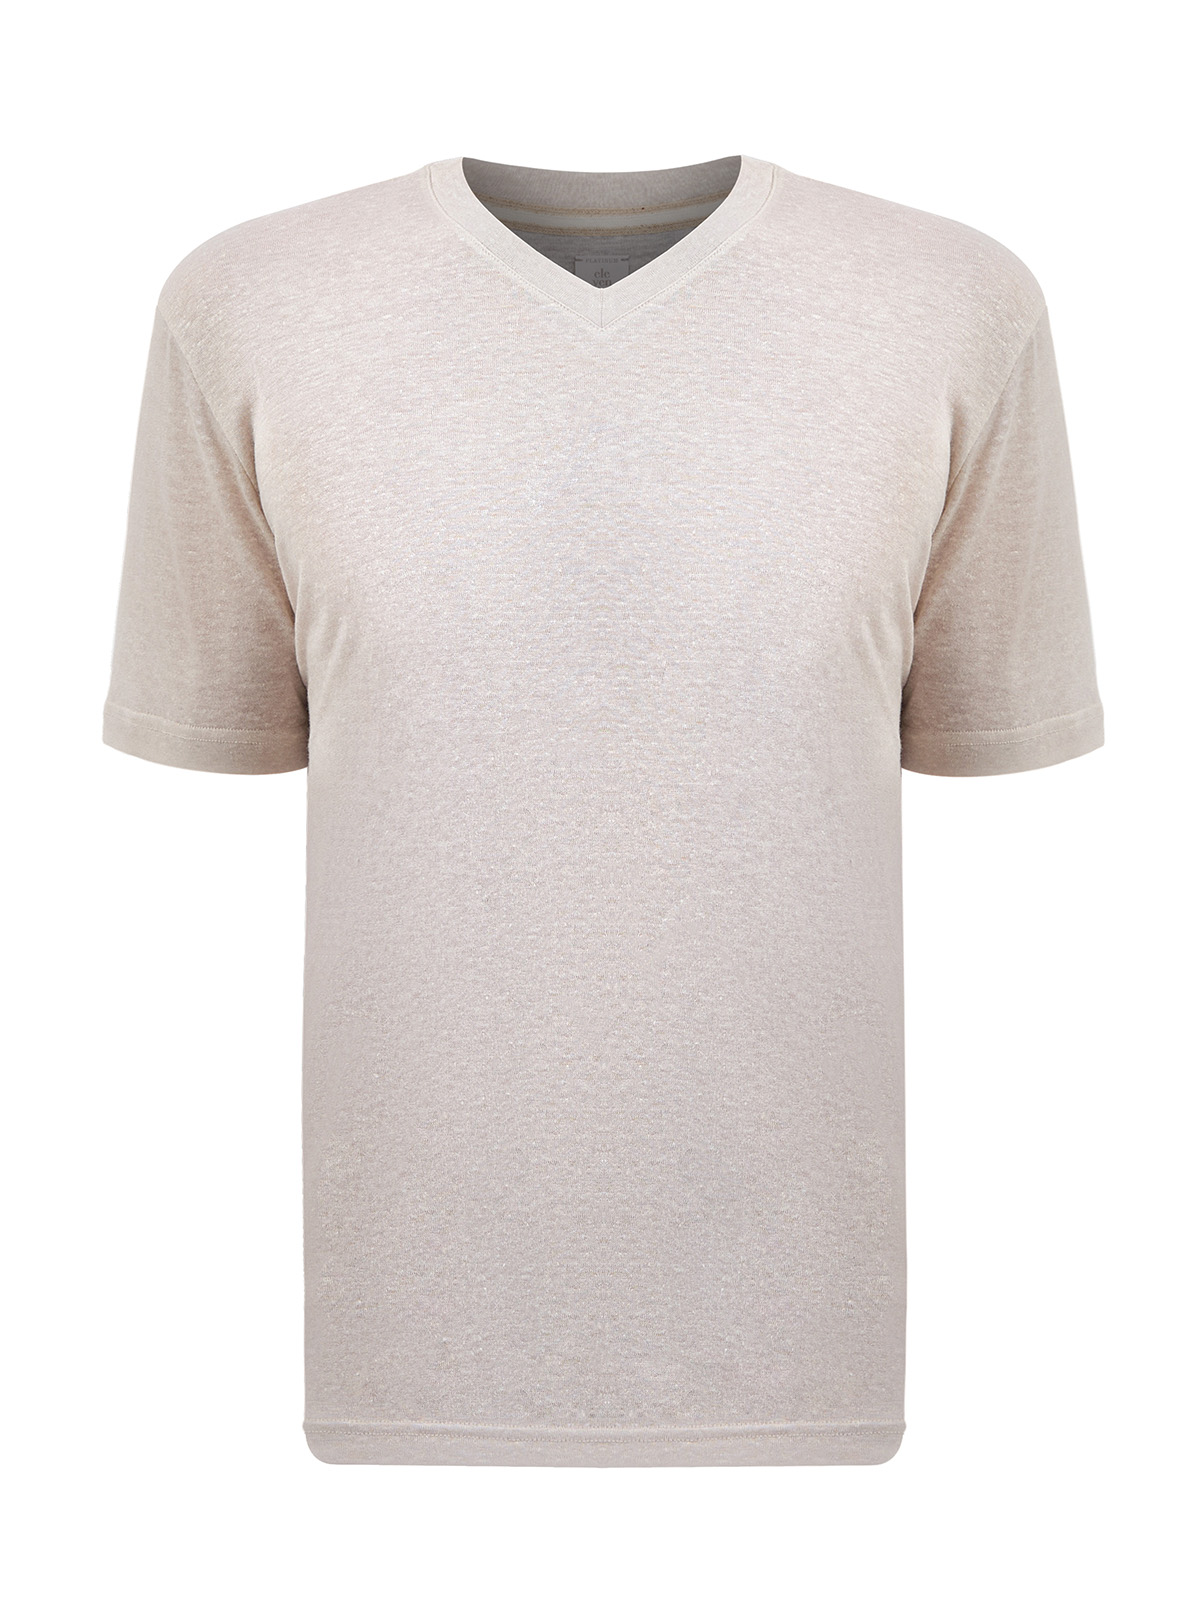 Легкая футболка с V-образным вырезом из меланжевого льна и хлопка